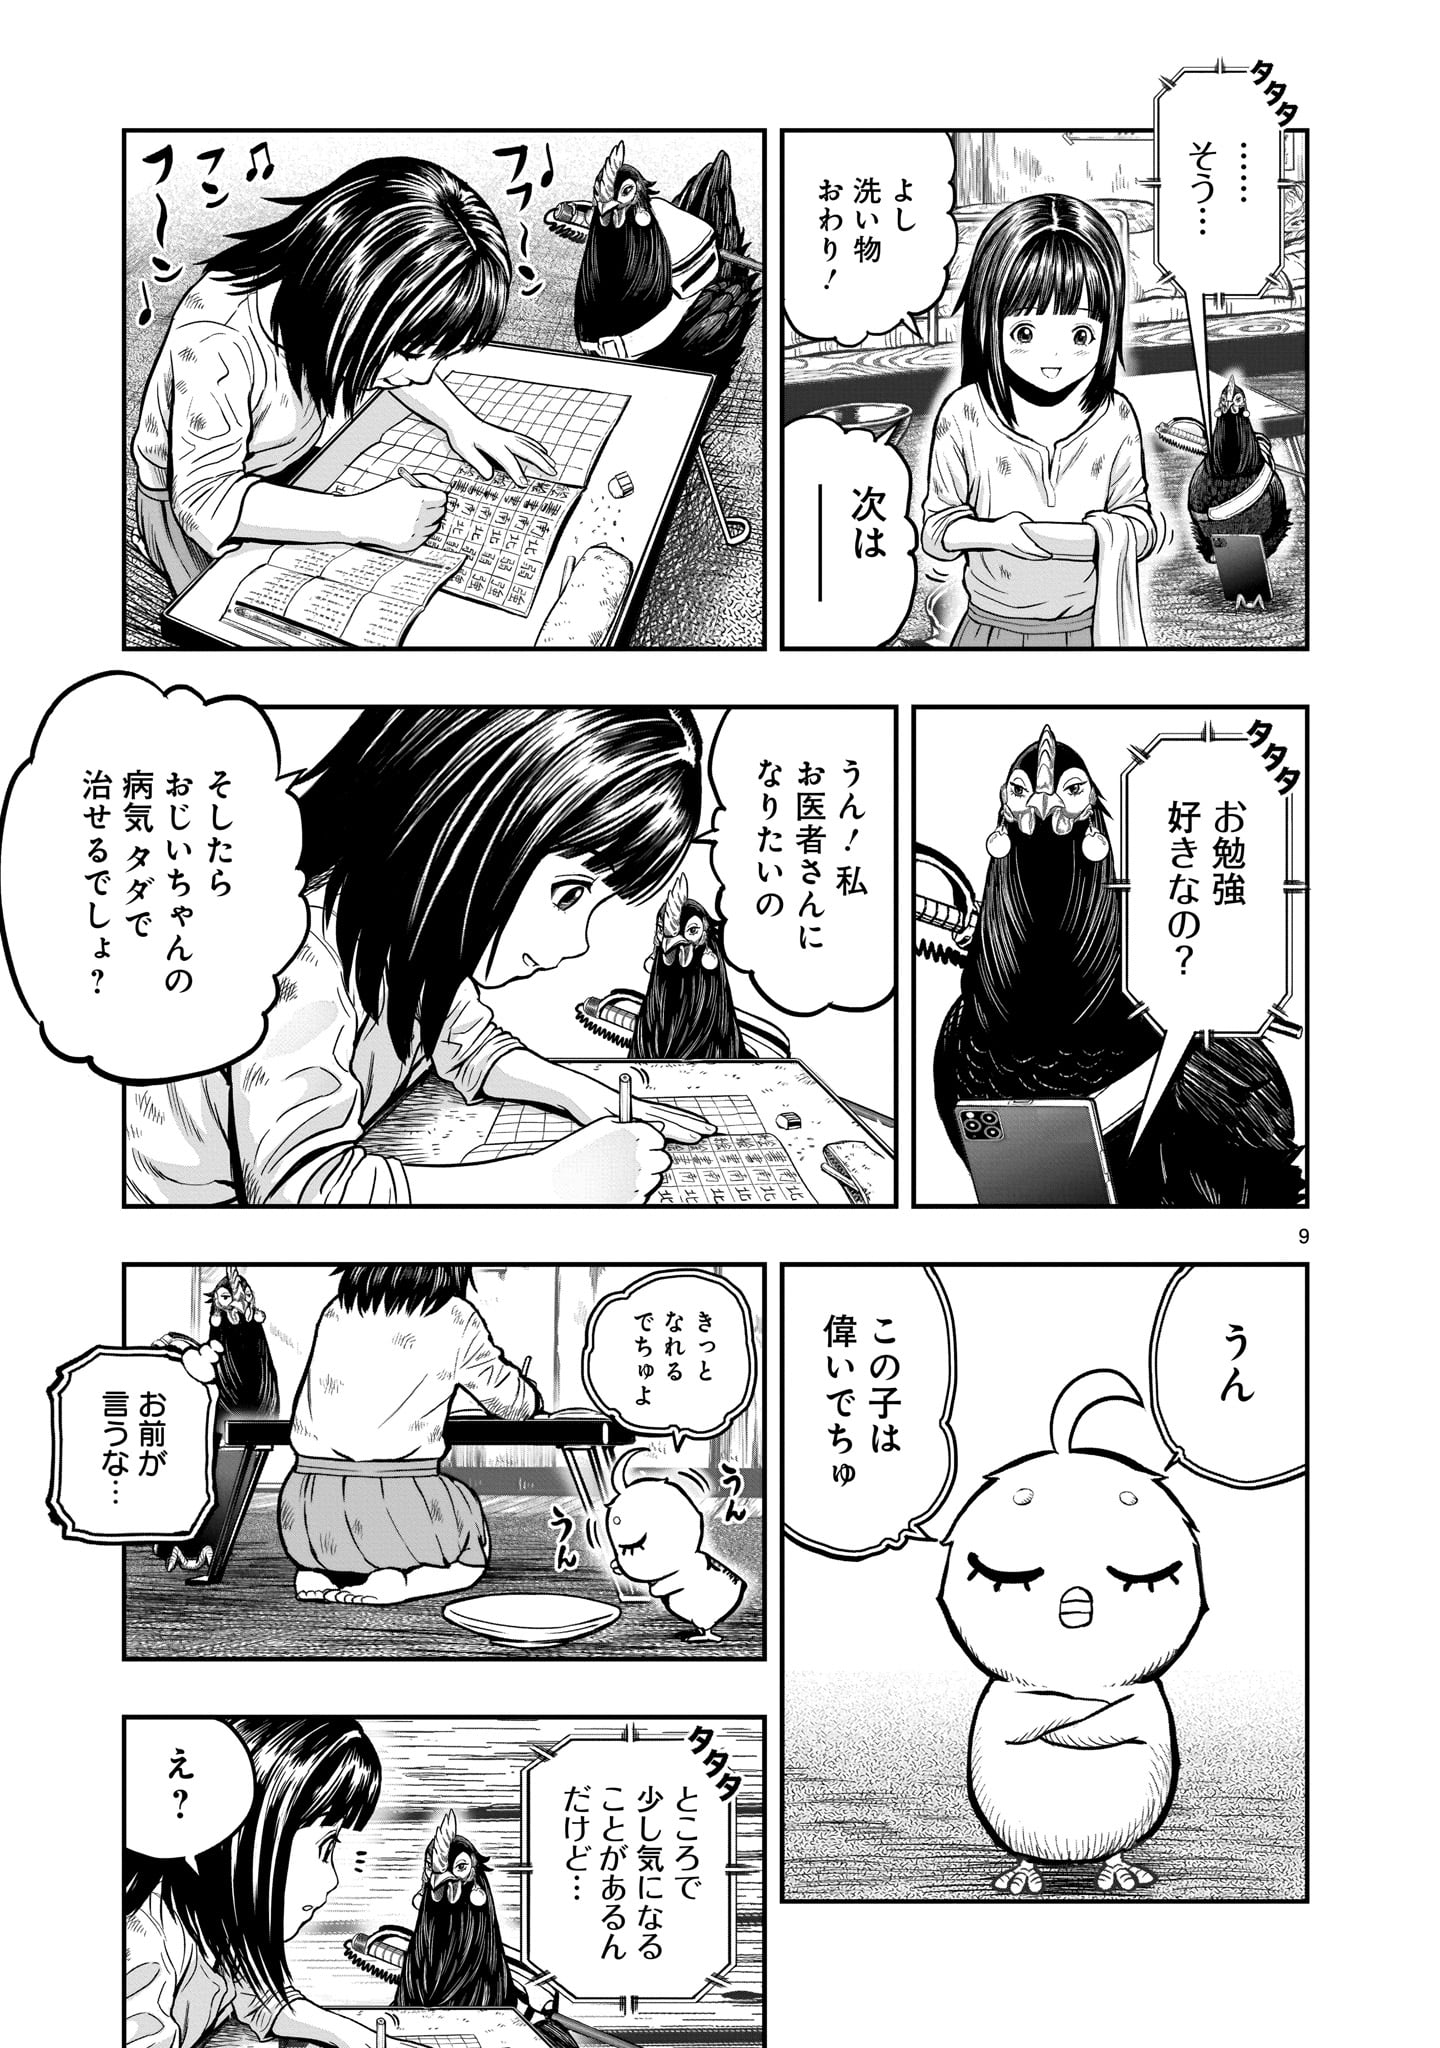 Saint Seiya: Meiou Iden – Dark Wing 第13話 - Page 9